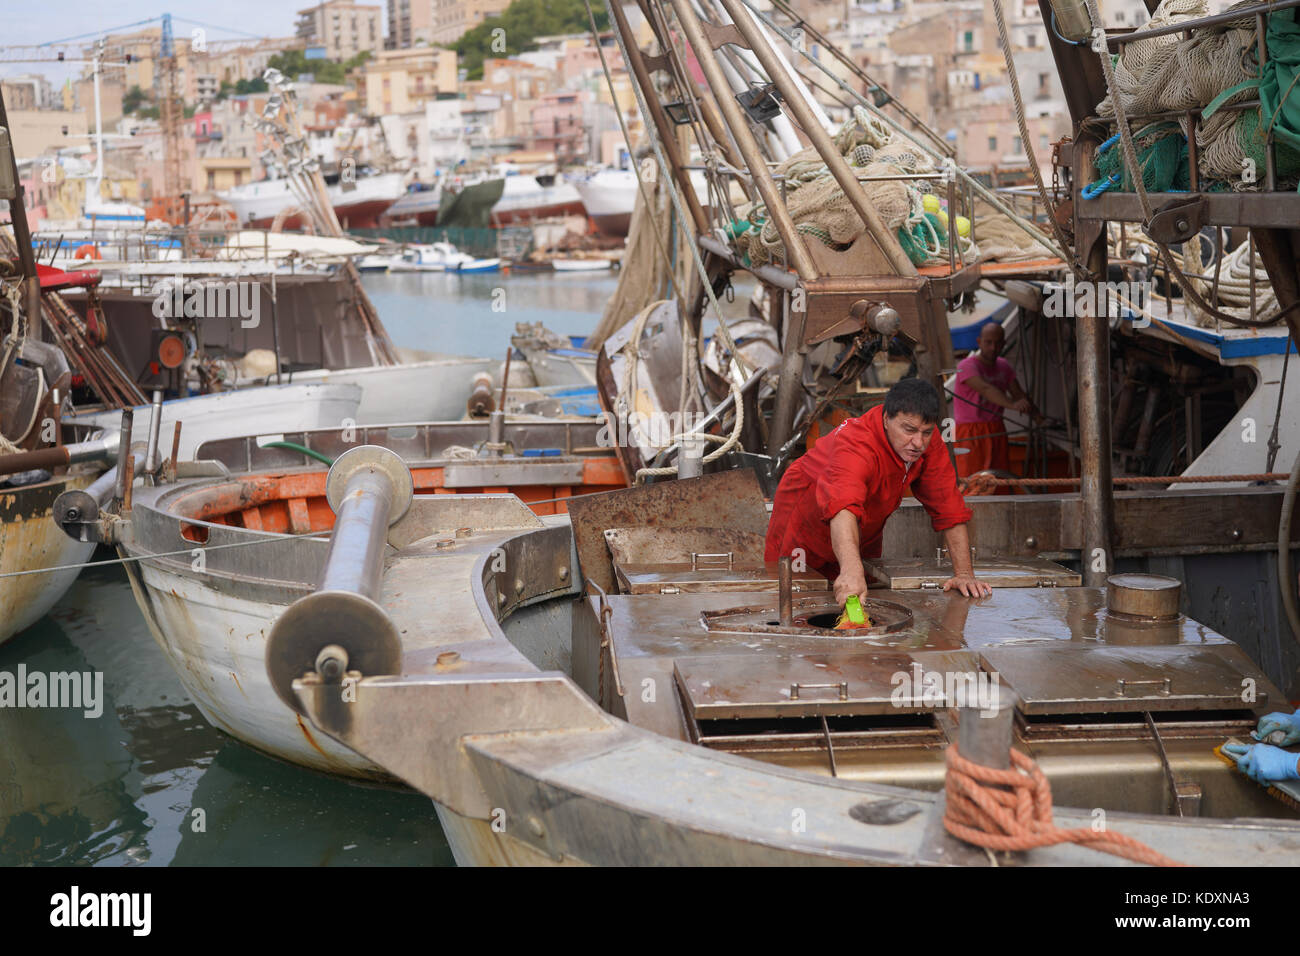 Ein Fischer sein Boot Reinigung während der Fischerei ist ein Monat Embargo im Hafen von Sciacca. Aus einer Serie von Fotos in Sizilien, Italien. foto Datum: Tu Stockfoto